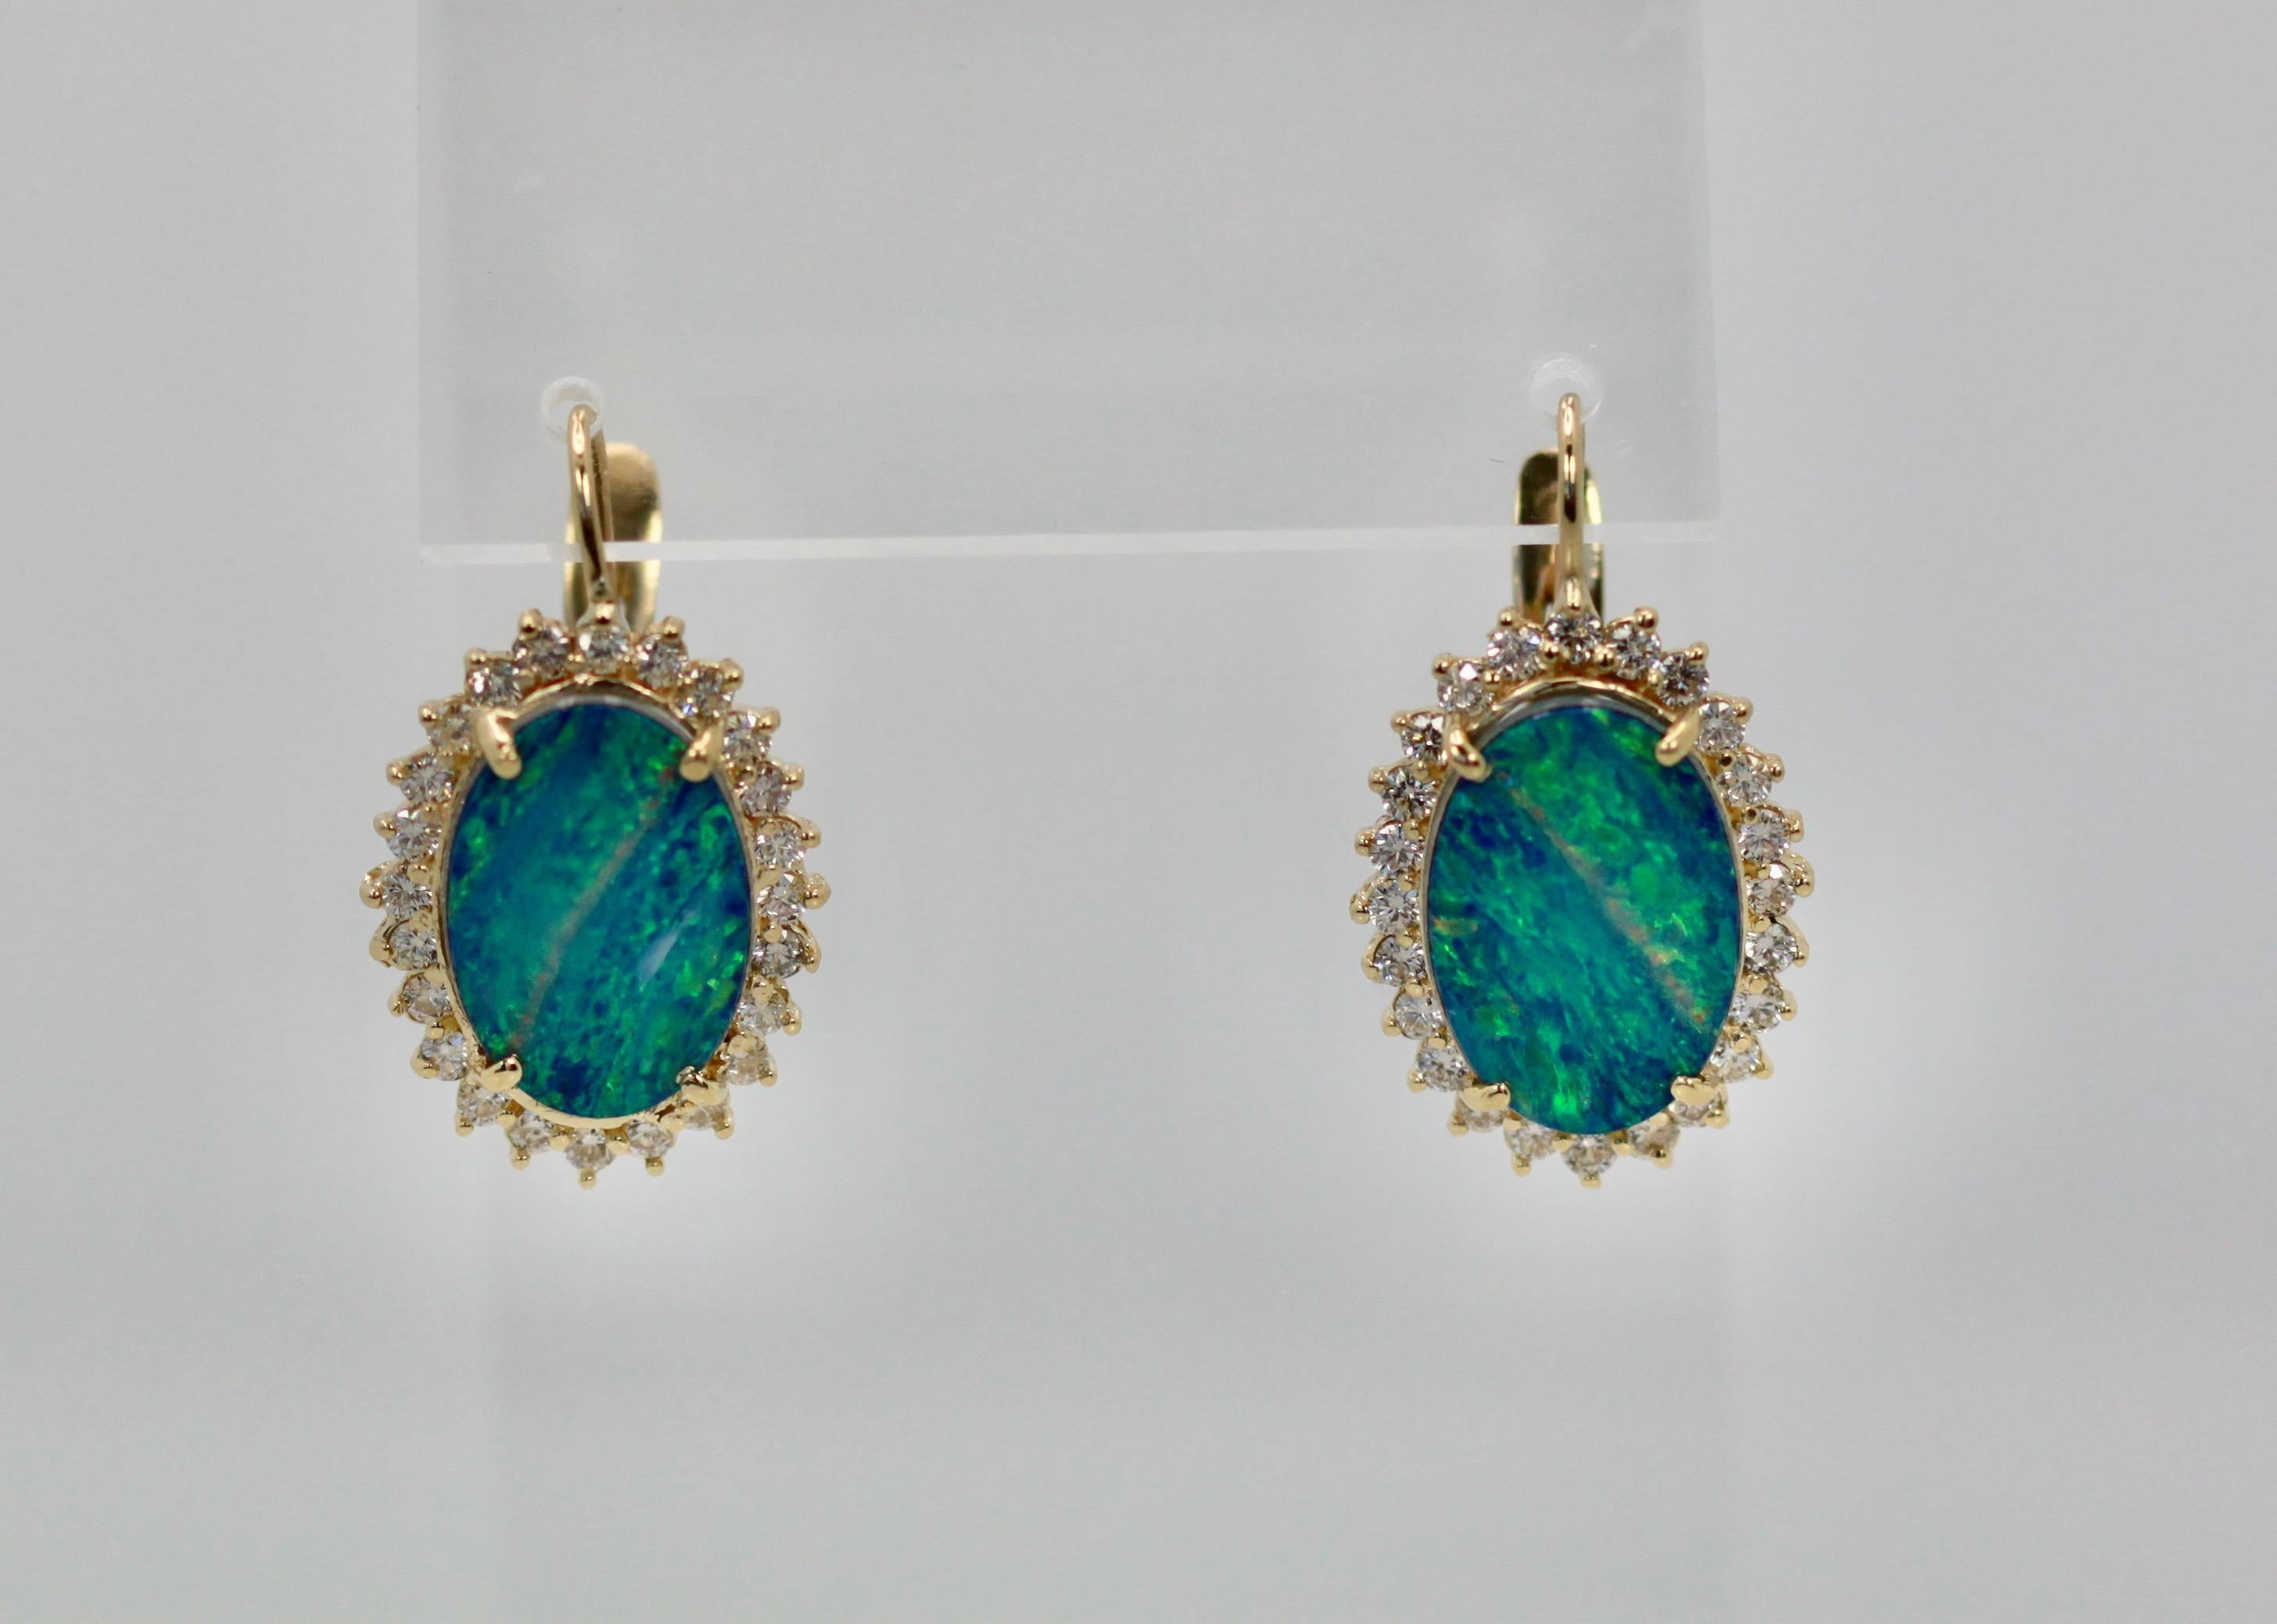 Diese Black Opal Ohrringe sind oval und mit einem Diamanten umgeben.  Die Opale sind 18,54 mm x 13,08 mm groß, es handelt sich um Opal-Doubletten. Sie sind mit Diamanten umgeben und messen 23,26 mm x 17,51 mm.  Diese wiegen 10,2 Gramm und enthalten